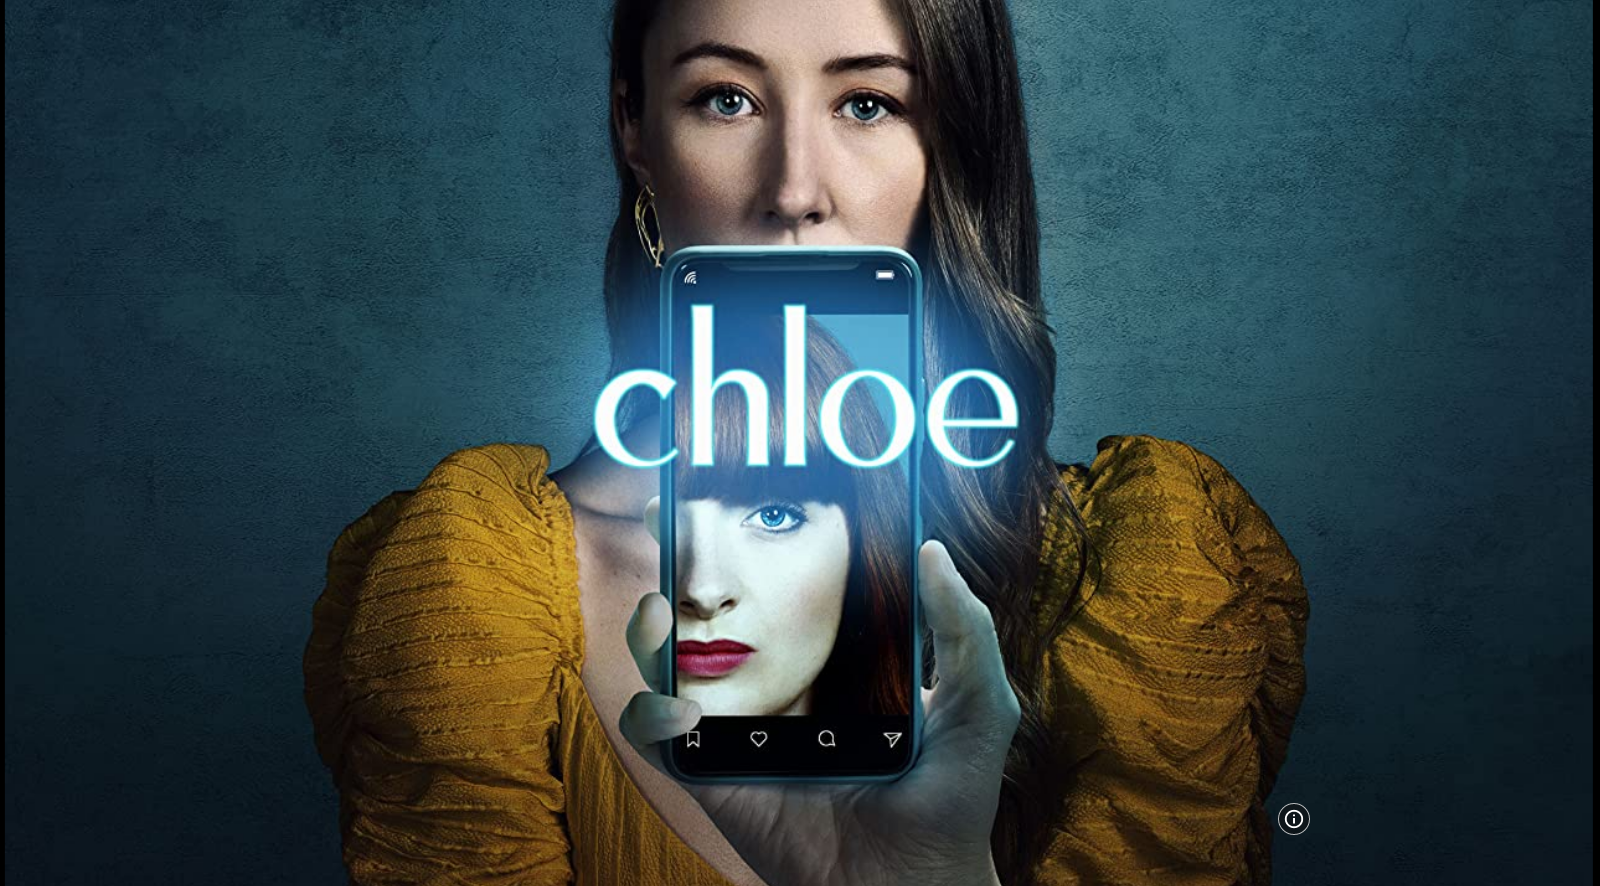 Chloe S01E05 HLG 2160p WEB H265